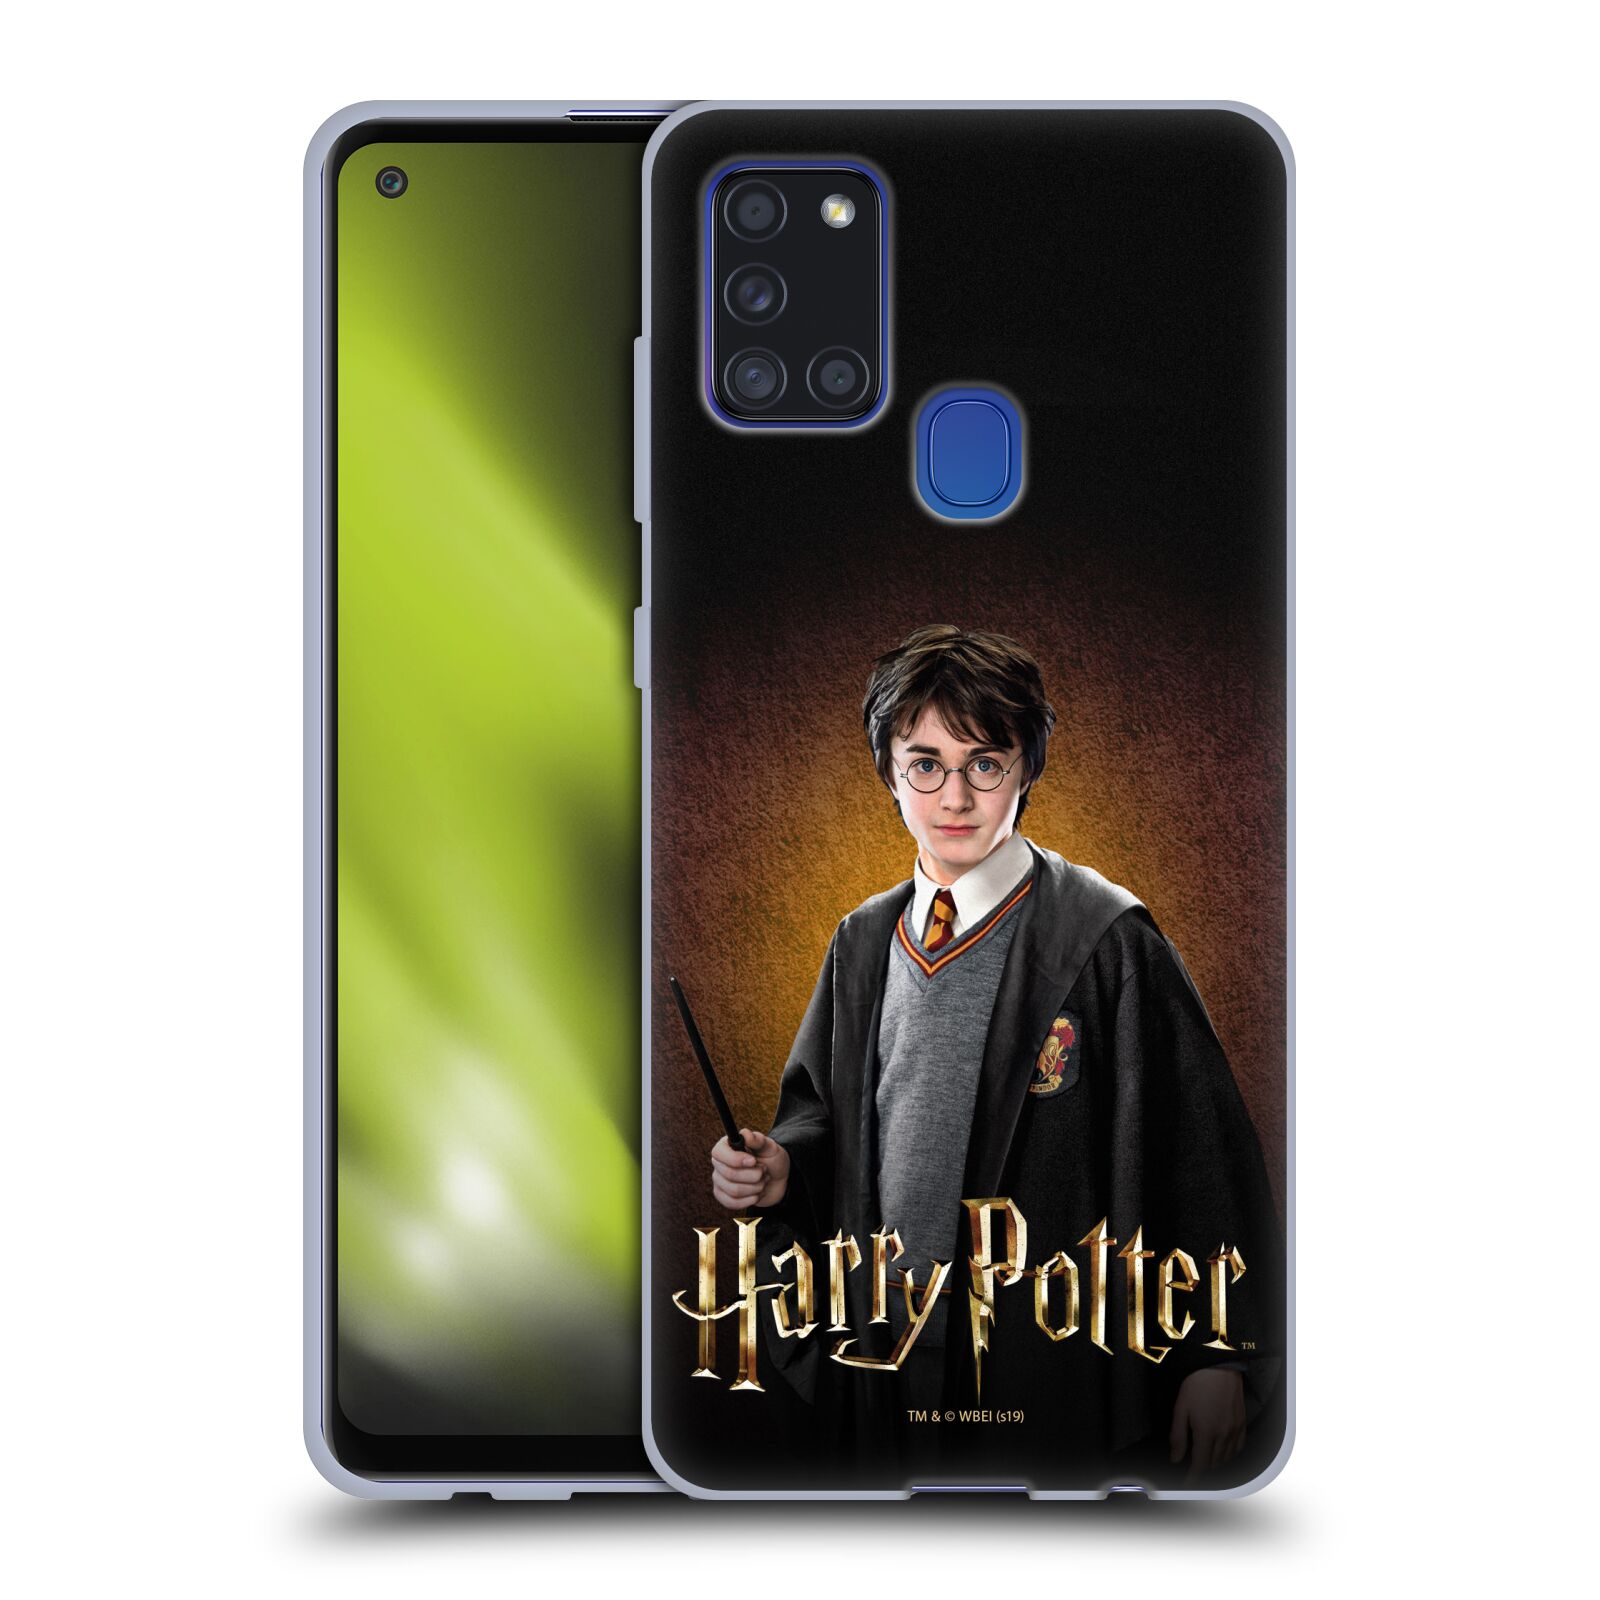 Silikonové pouzdro na mobil Samsung Galaxy A21s - Harry Potter - Malý Harry Potter (Silikonový kryt, obal, pouzdro na mobilní telefon Samsung Galaxy A21s SM-A217F s licencovaným motivem Harry Potter - Malý Harry Potter)